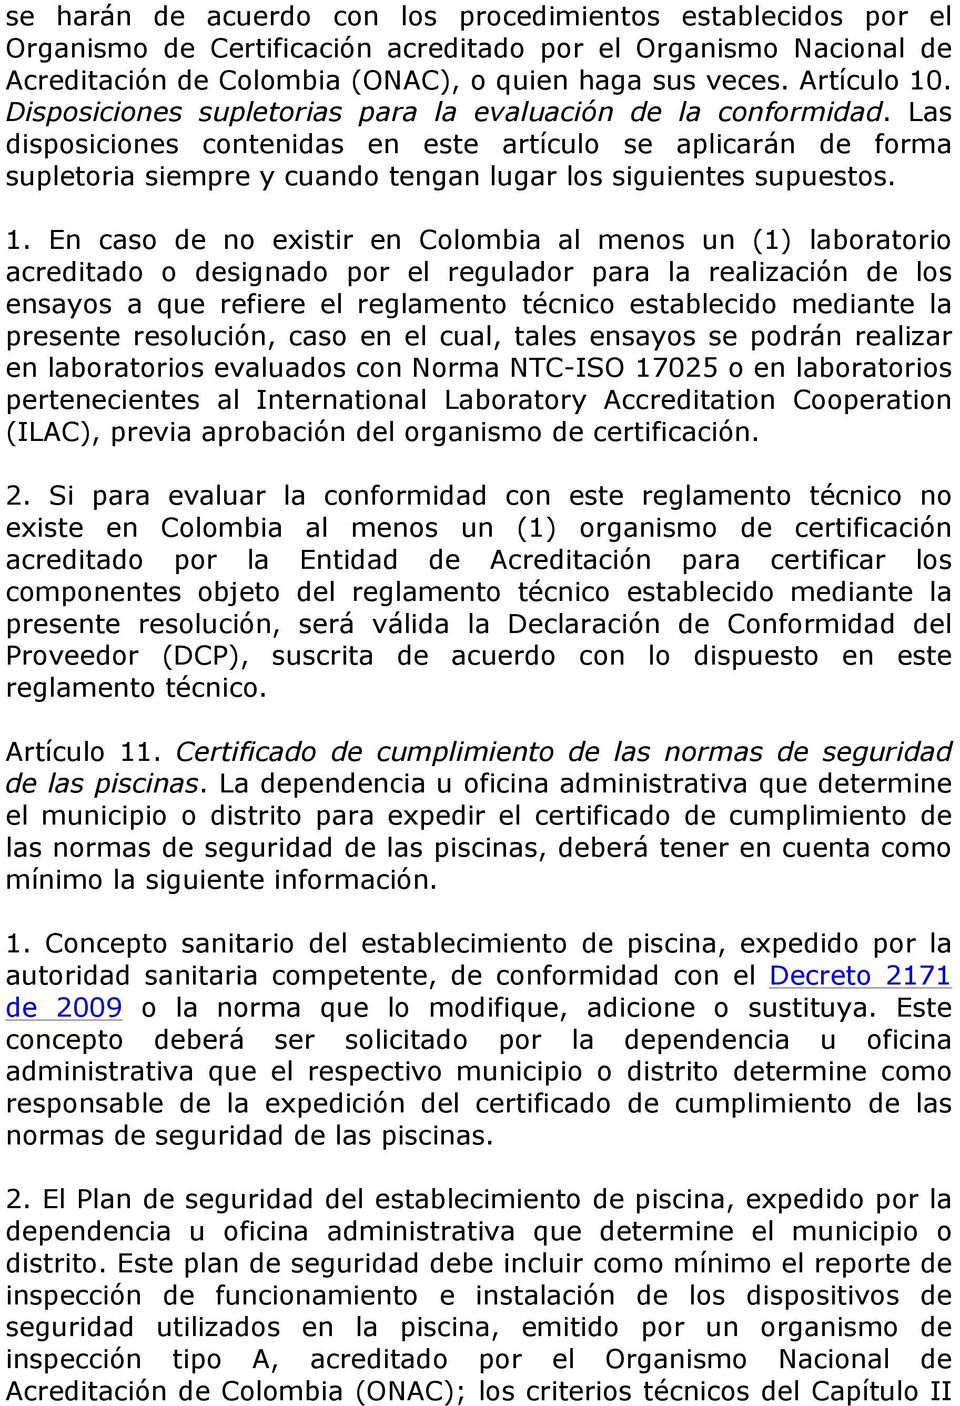 1. En caso de no existir en Colombia al menos un (1) laboratorio acreditado o designado por el regulador para la realización de los ensayos a que refiere el reglamento técnico establecido mediante la